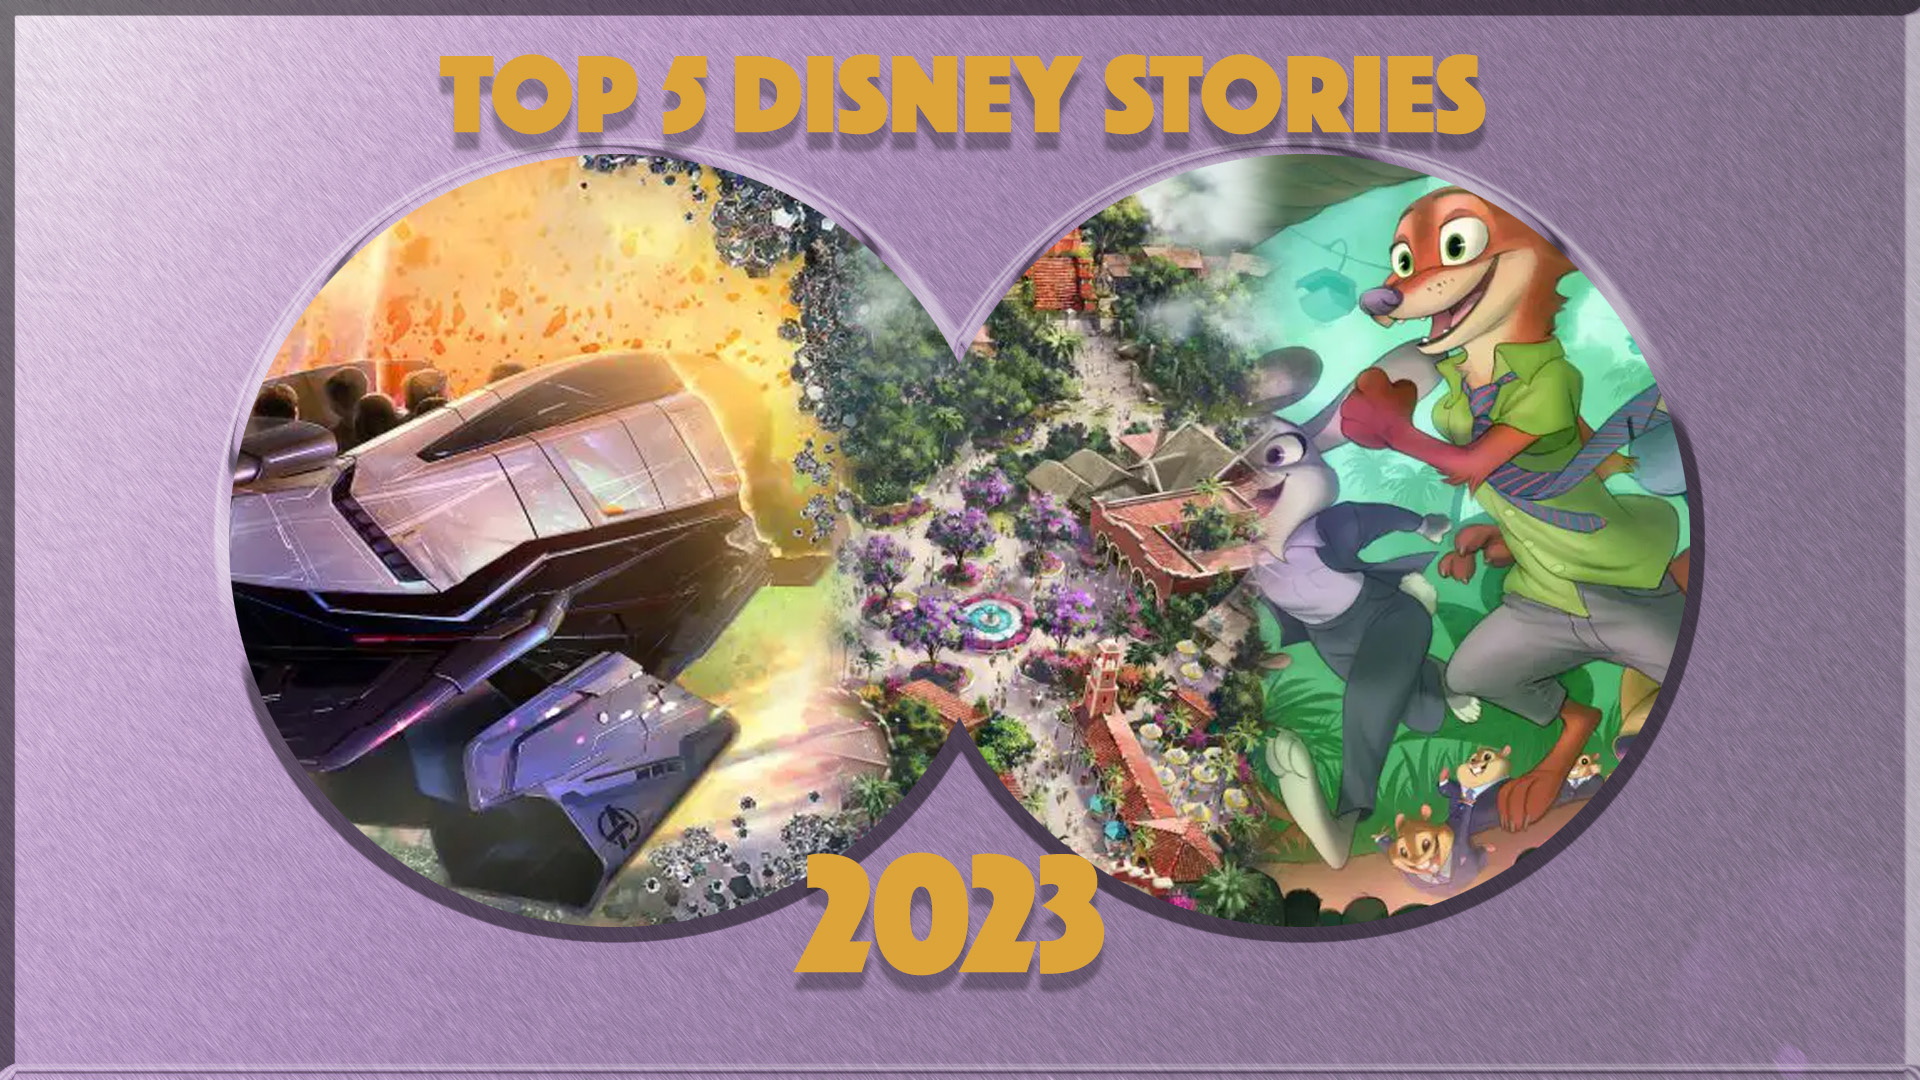 Top 5 Disney Stories of 2023: #5 Destination D23 Announcements